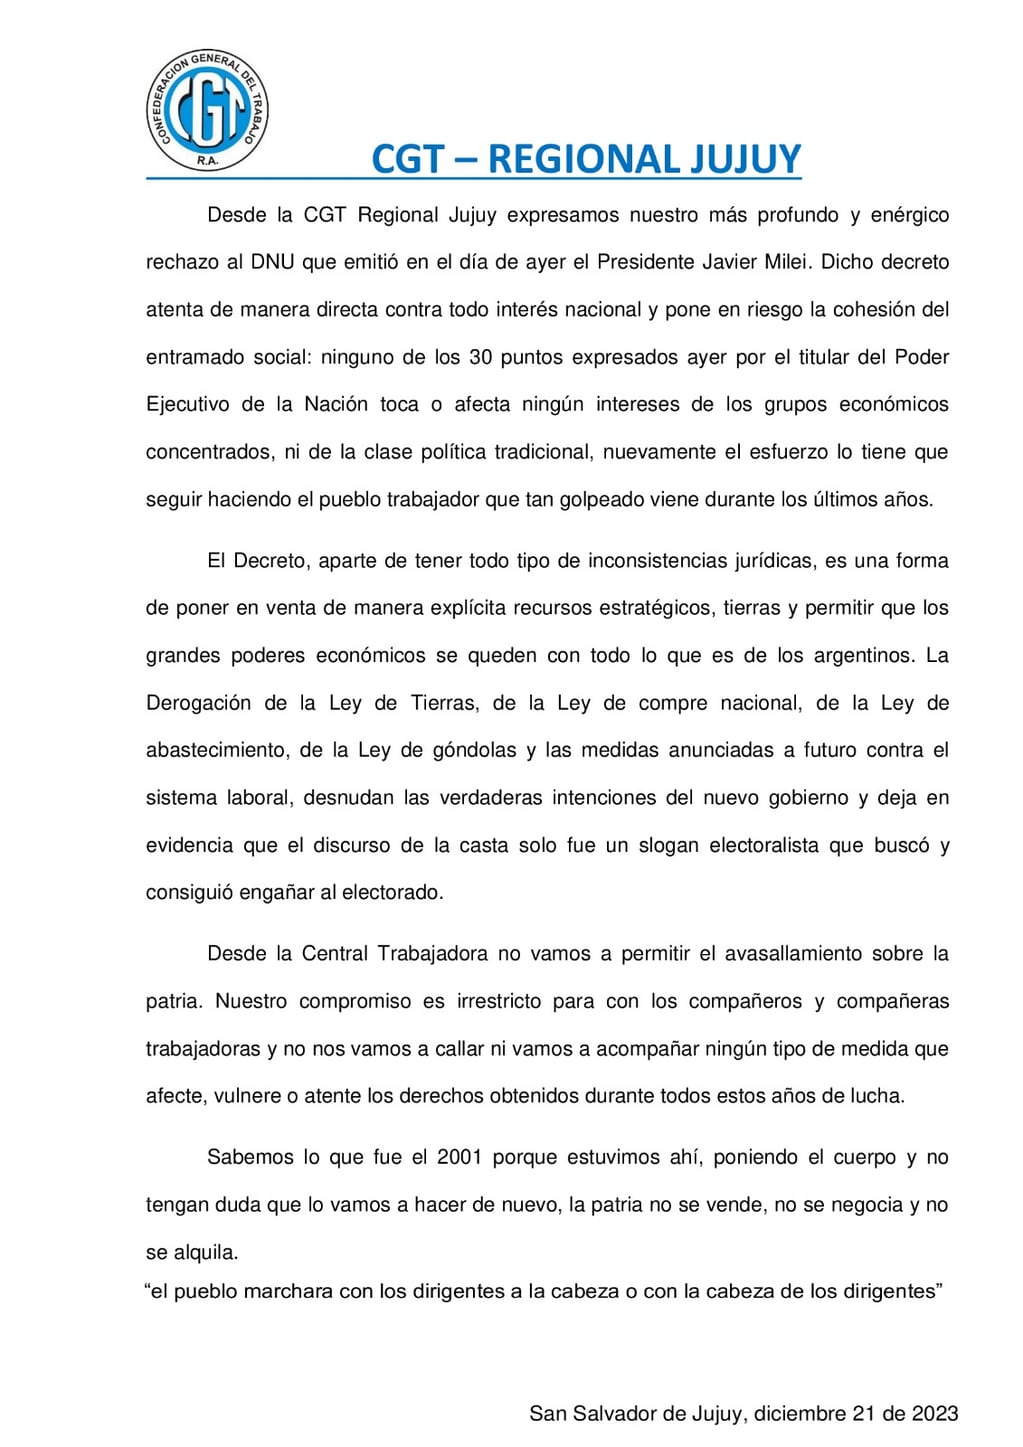 Documento de la CGT Regional Jujuy difundido este jueves en rechazo a los términos del DNU emitido por el presidente Javier Milei.